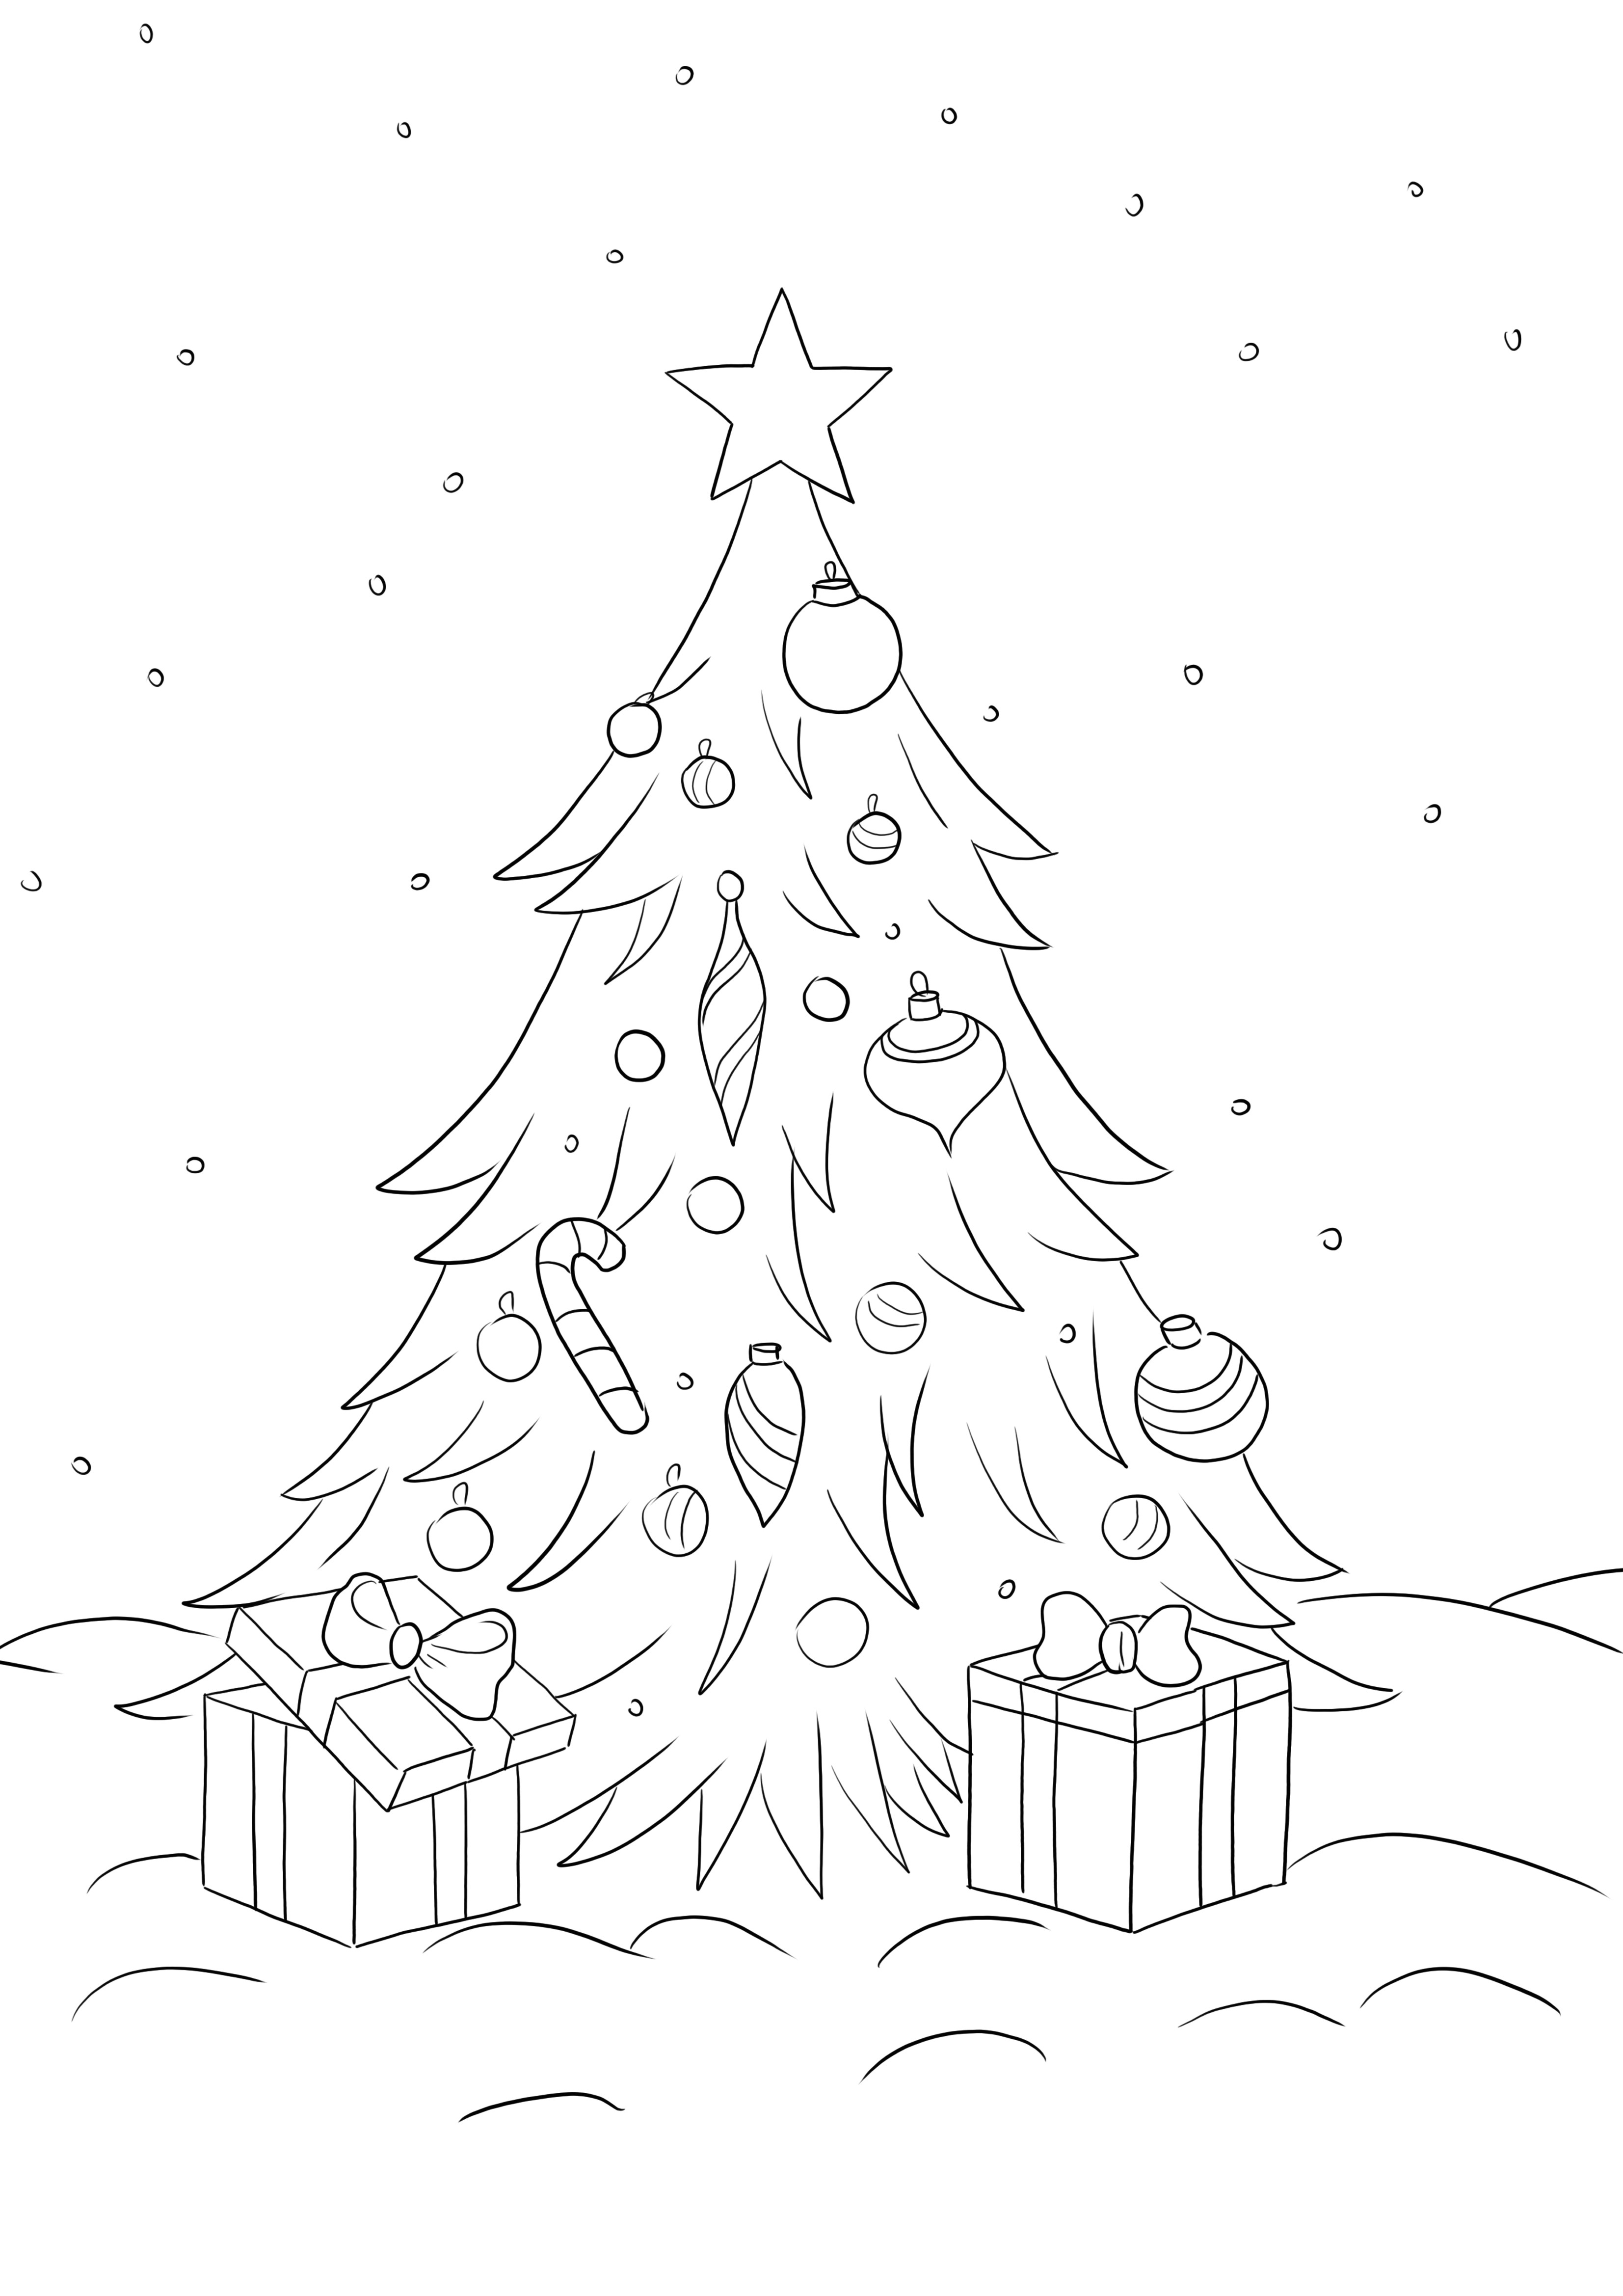 L'albero di Natale con i regali può essere scaricato e colorato gratuitamente